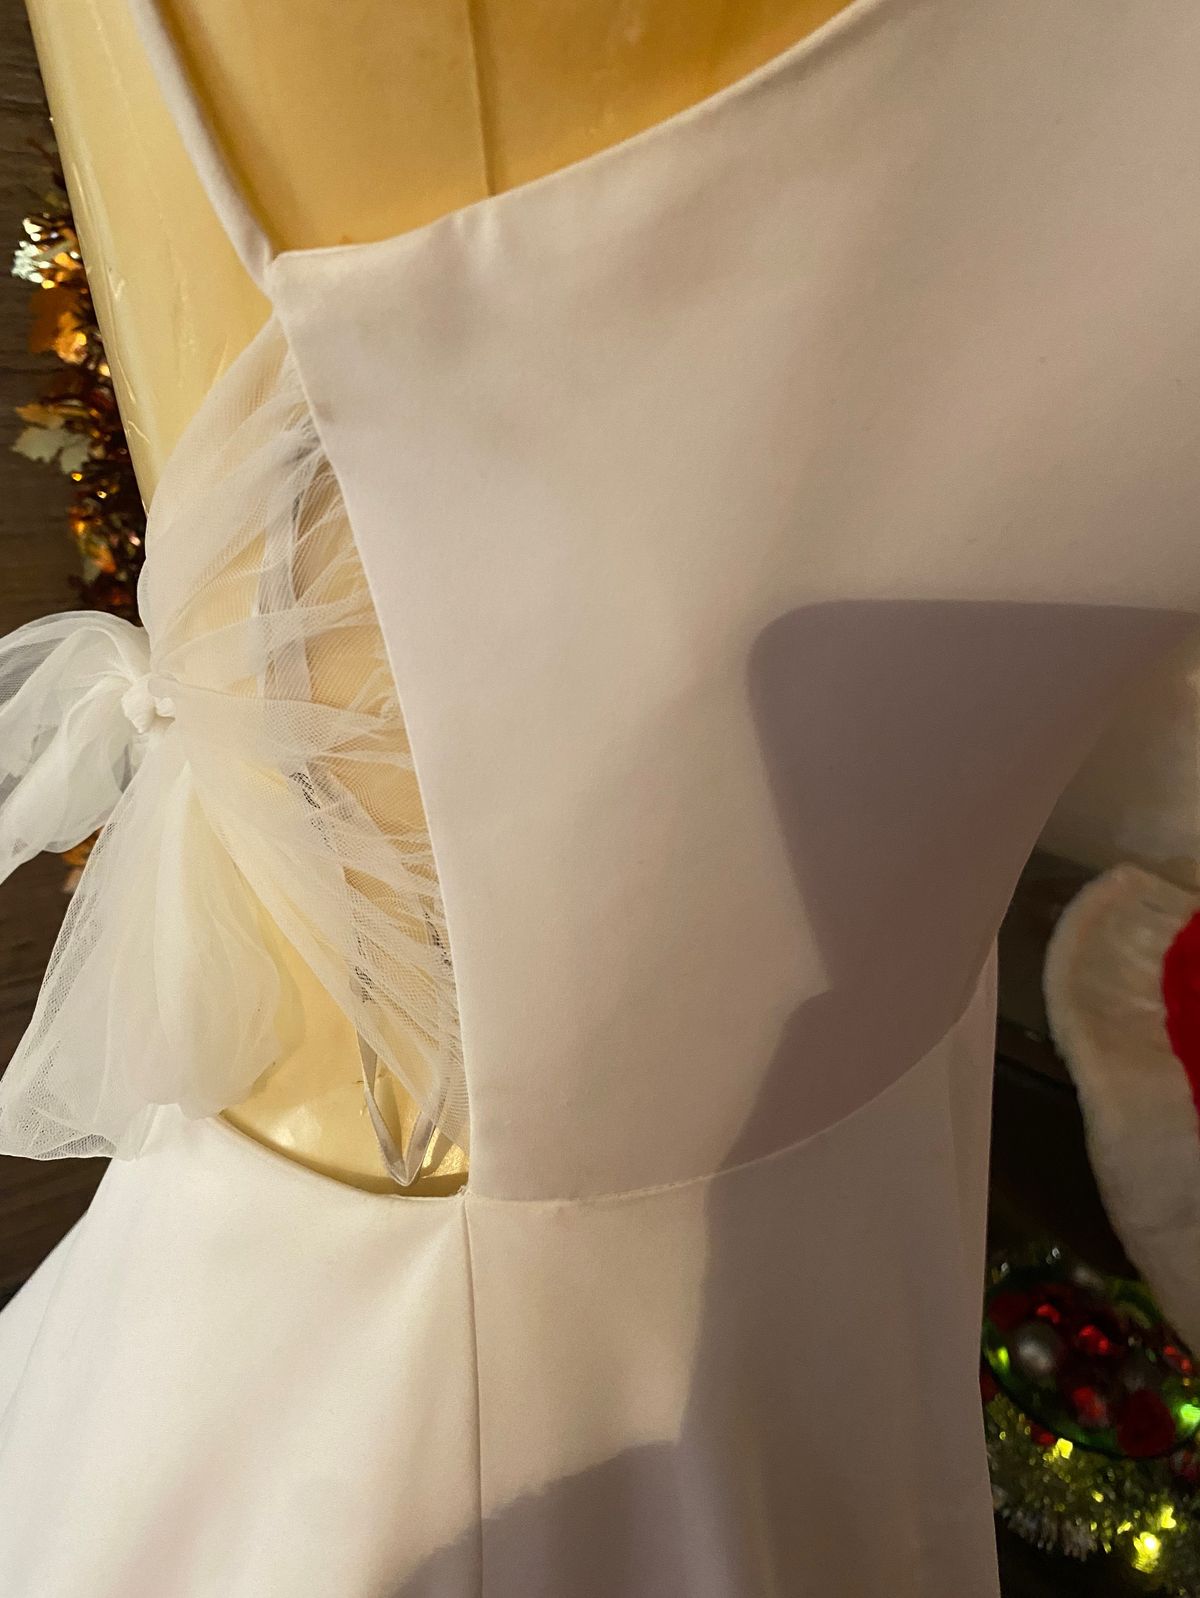 Style 7211zz Stella York Size 12 Wedding Plunge White Ball Gown on Queenly